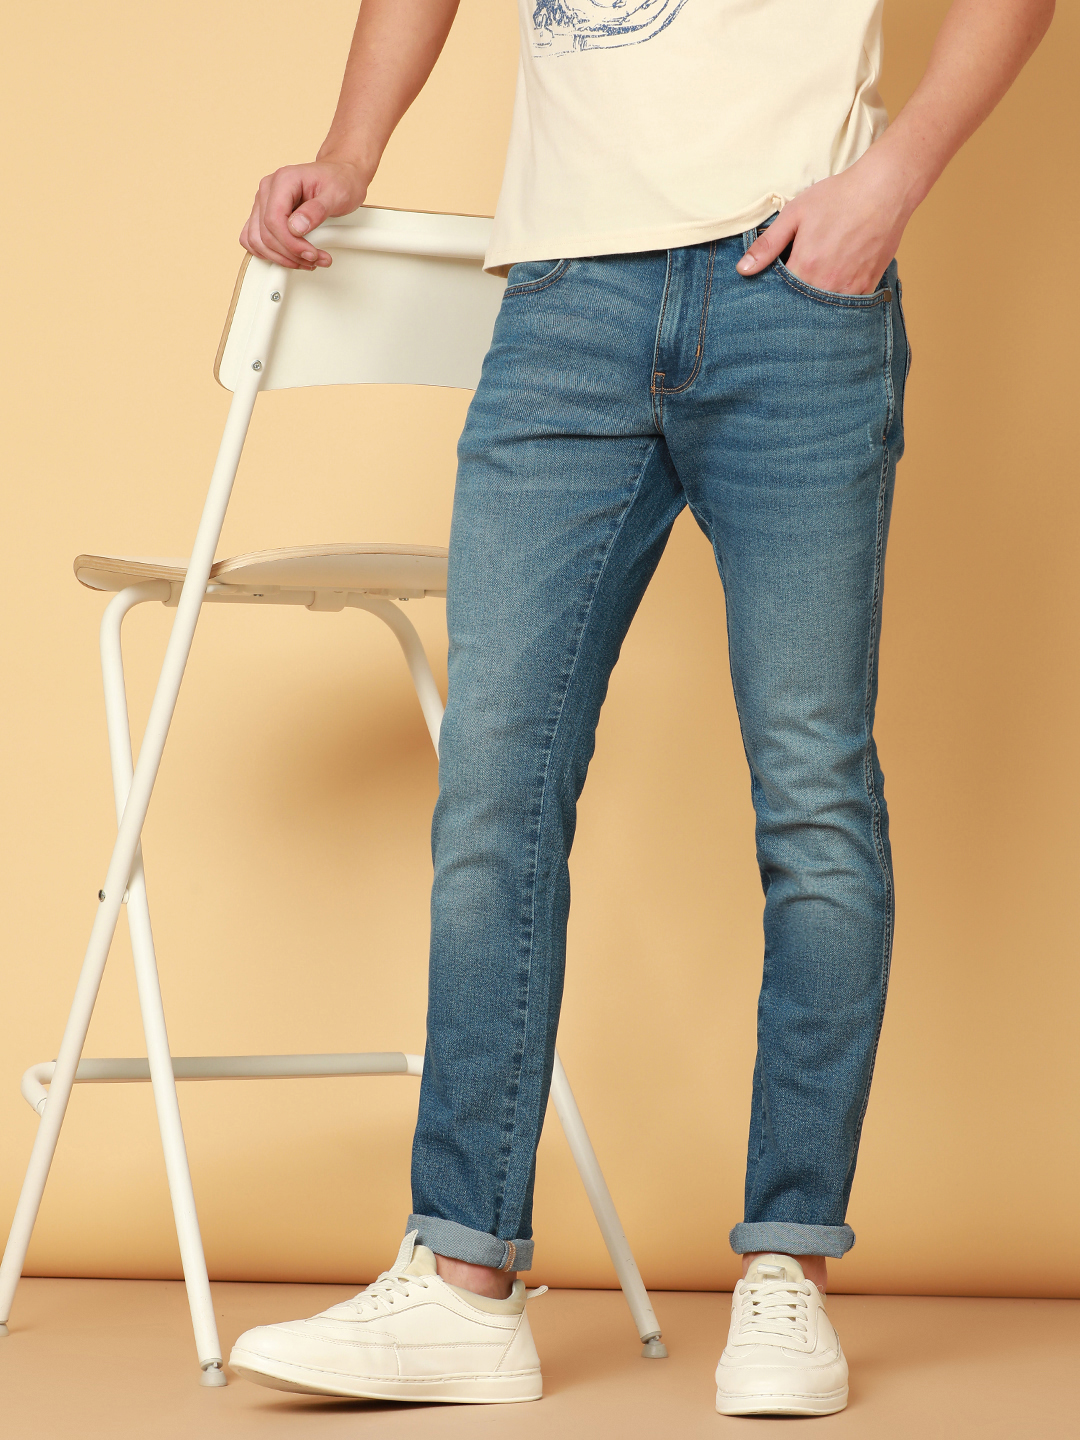 Buy Trendy Jeans for Men Online in India